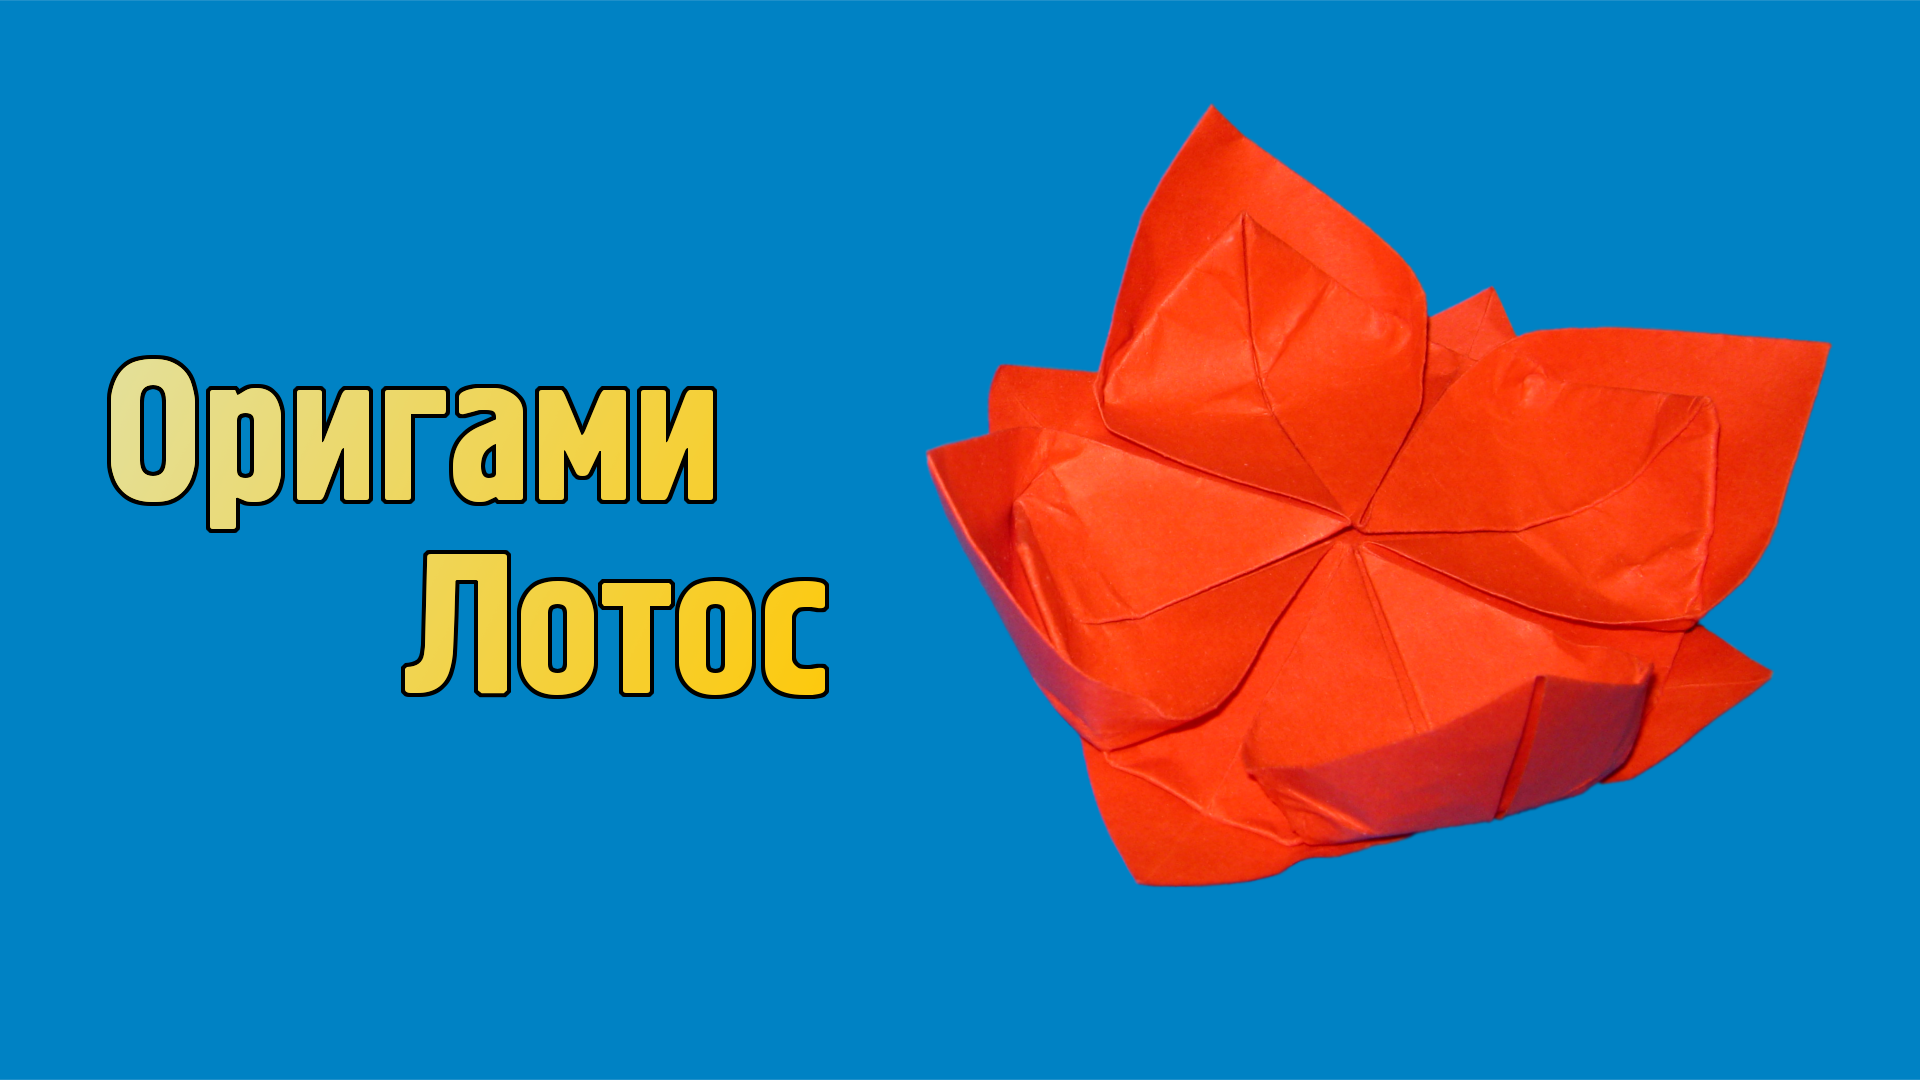 Как сделать Лотос из бумаги | Оригами Лотос своими руками | Бумажный Цветок для детей без клея